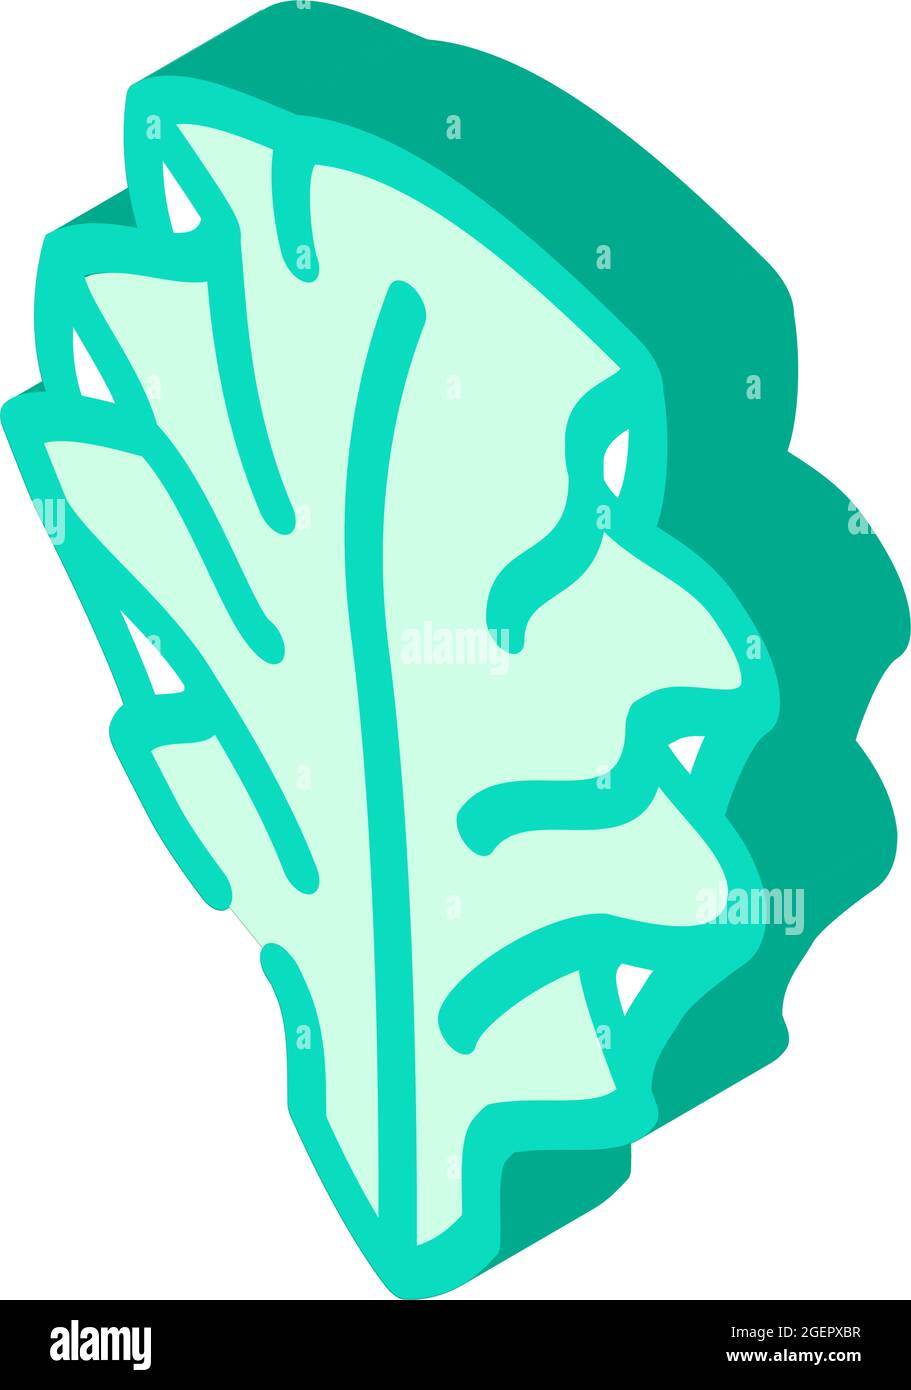 immagine vettoriale di icone isometriche delle alghe di ulva lattuga Illustrazione Vettoriale